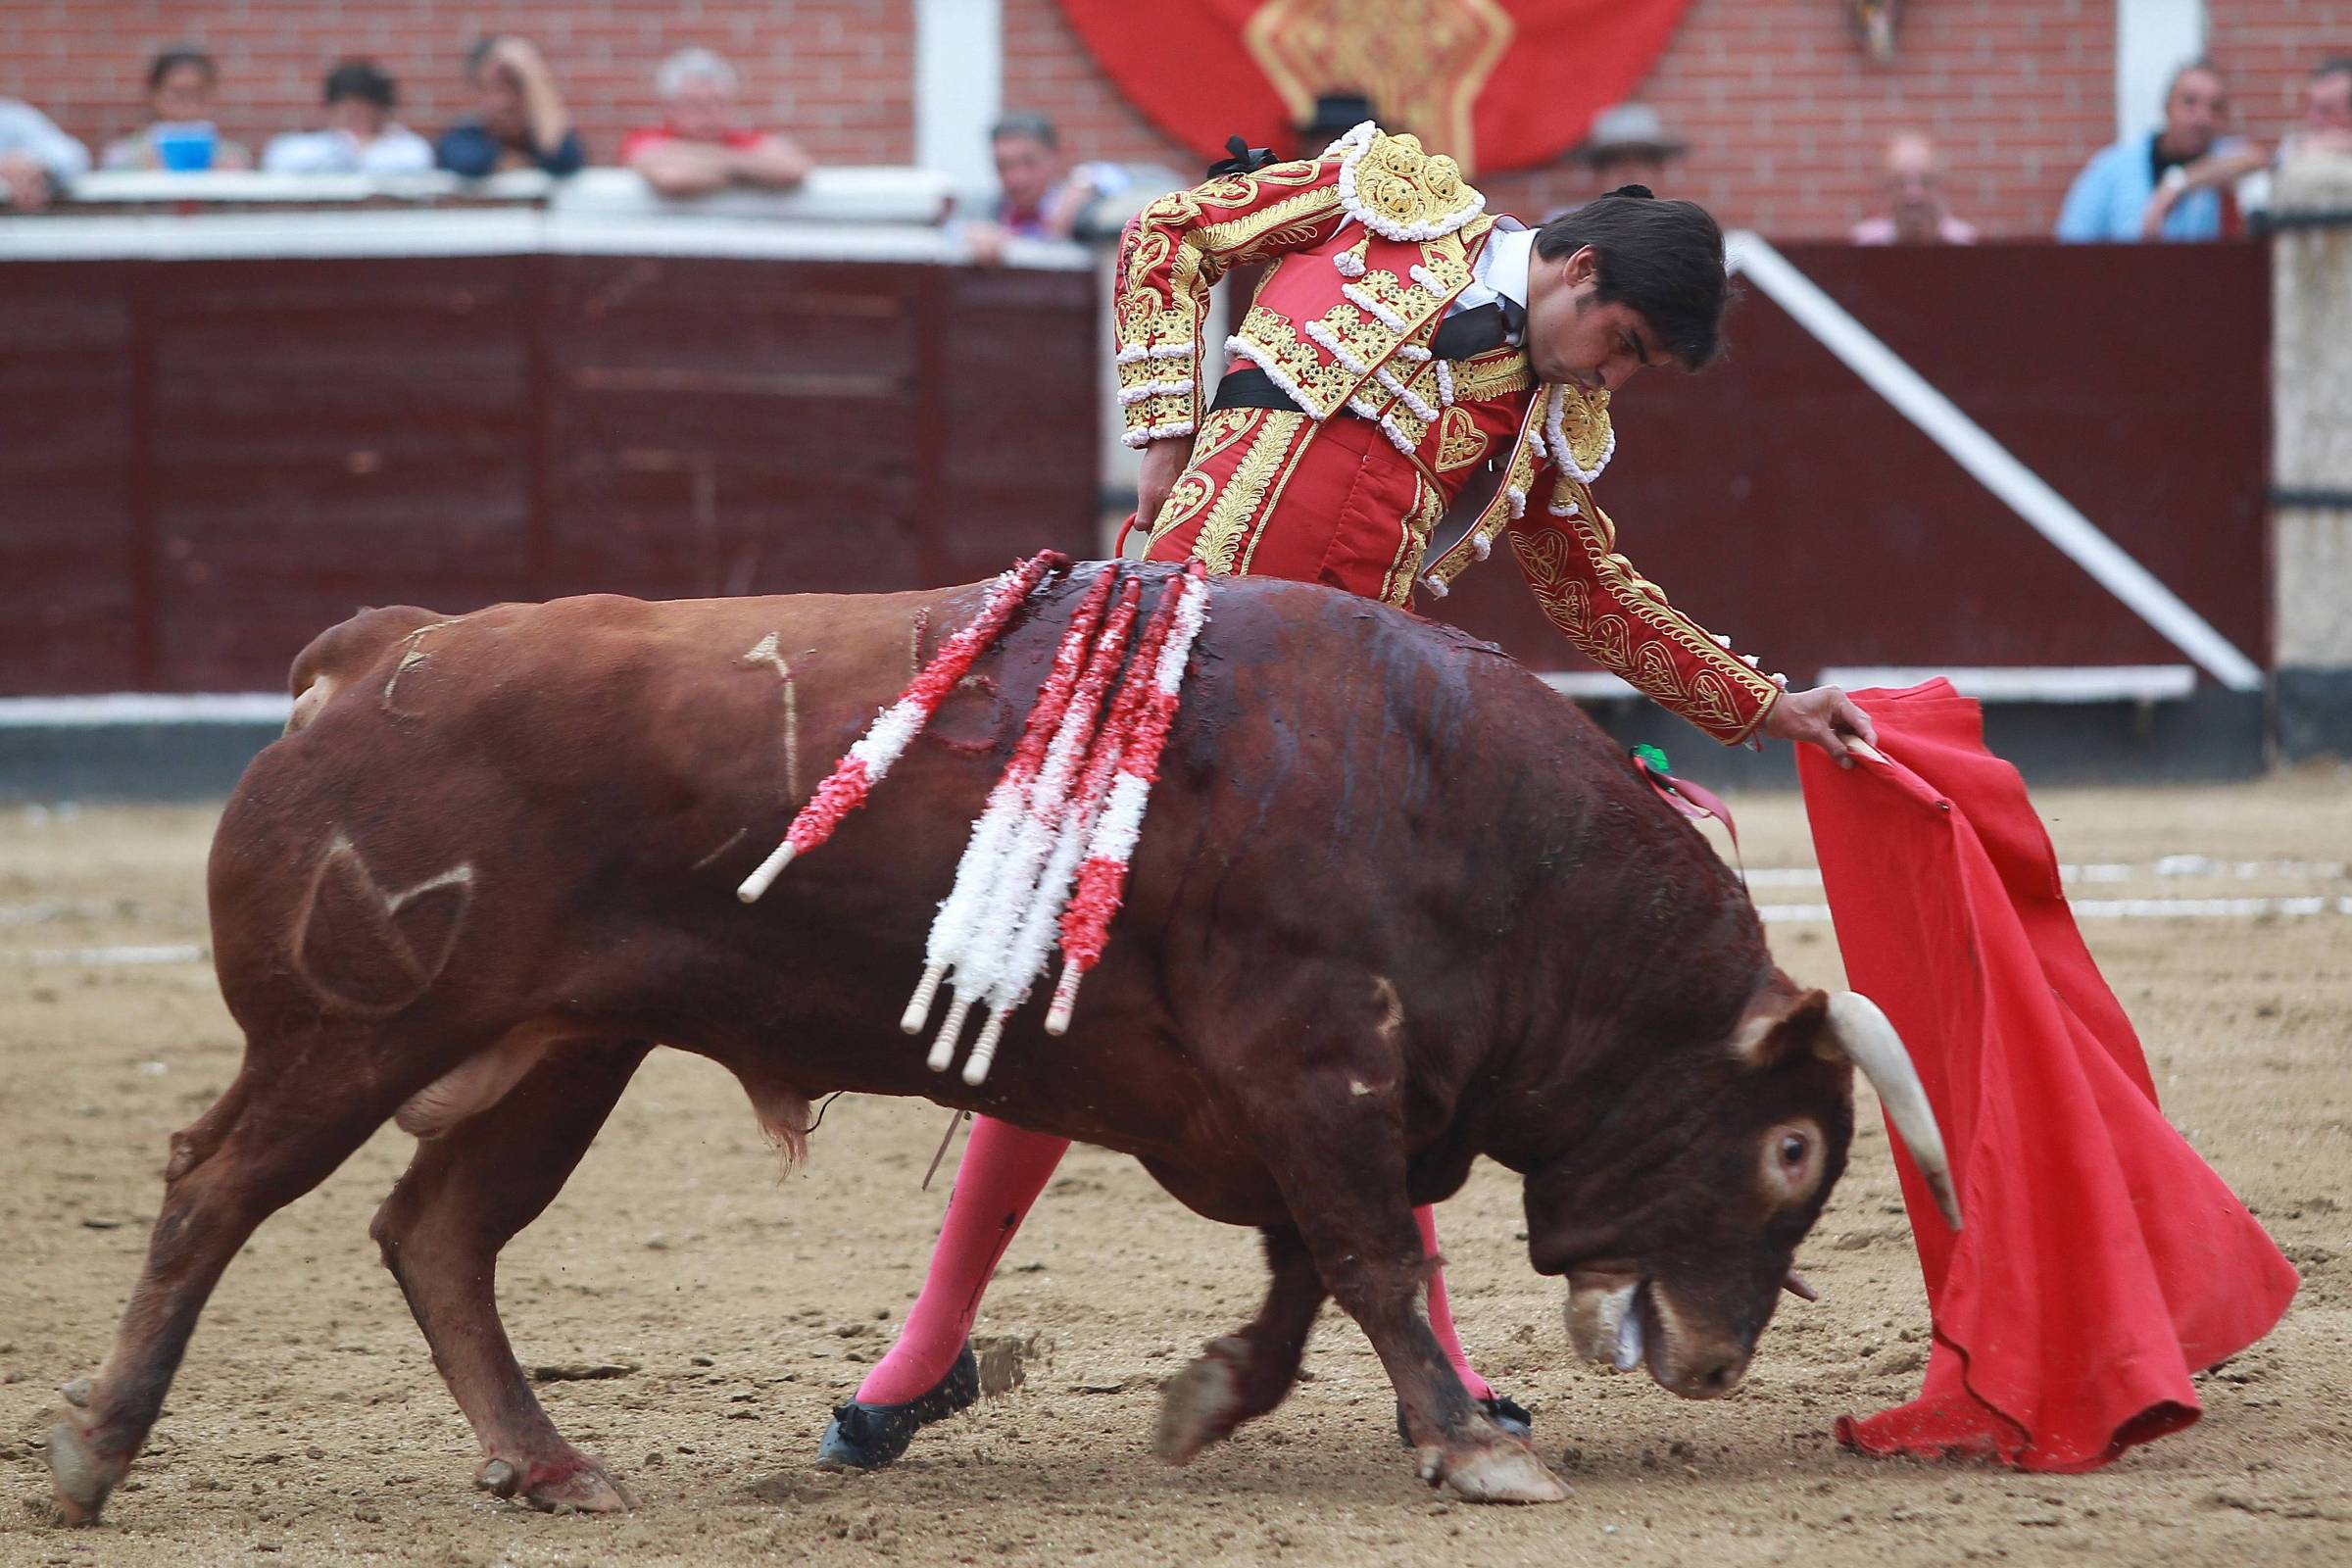 Espanha: corrida de touros nas ruas de Valência deixa três mortos